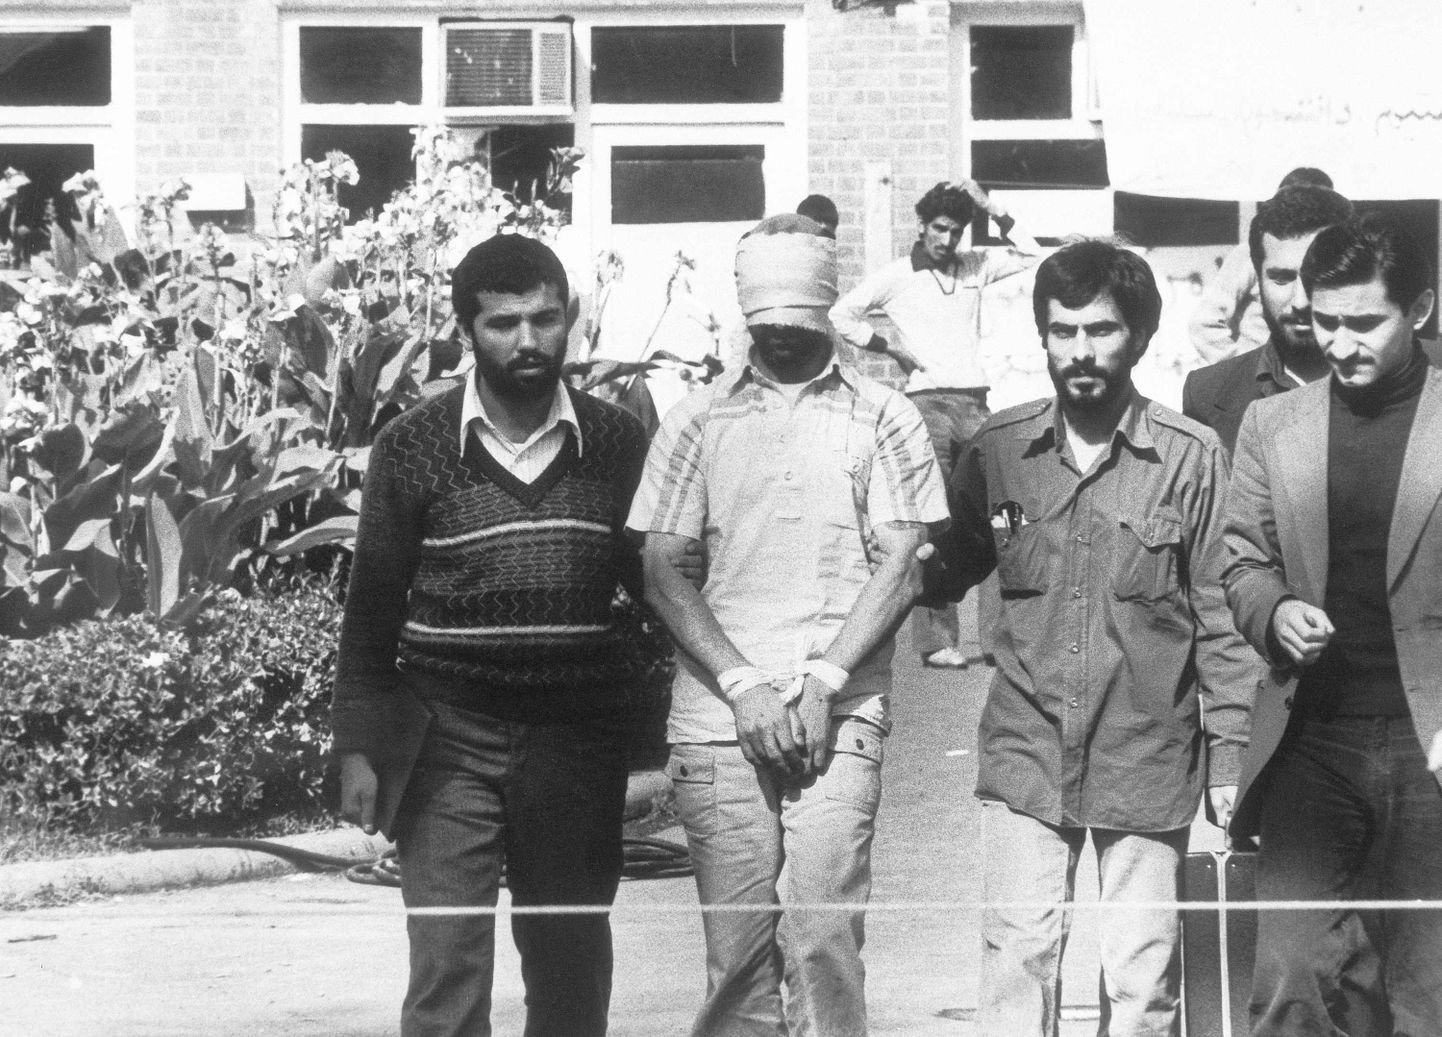 Iraani tudengid näitamas rahvale ühte USA saatkonnas võetud pantvangi 8. novembril 1979.